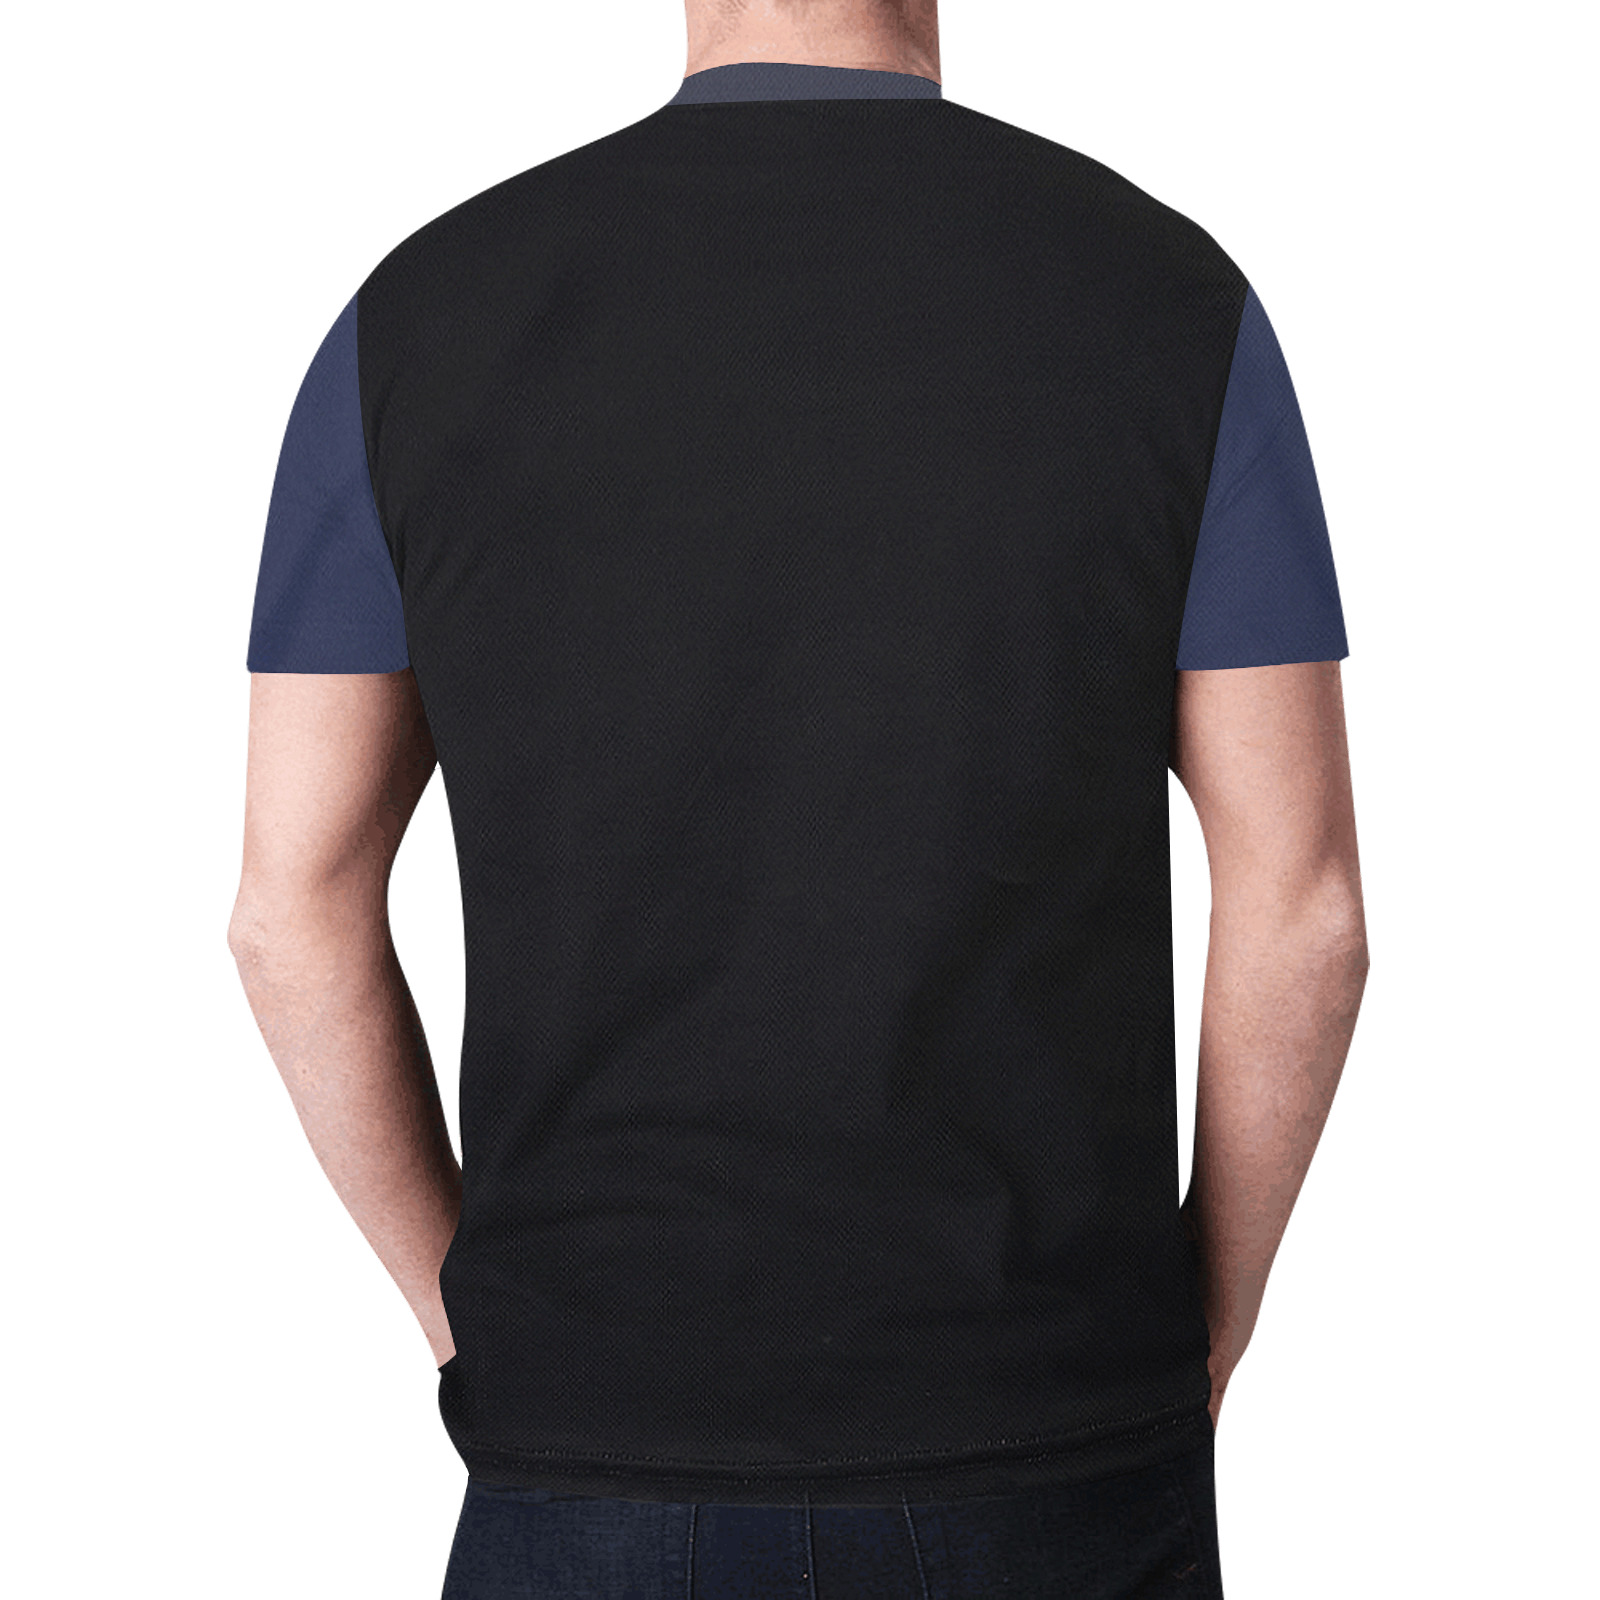 DOBRO Strings New All Over Print T-shirt for Men (Model T45)